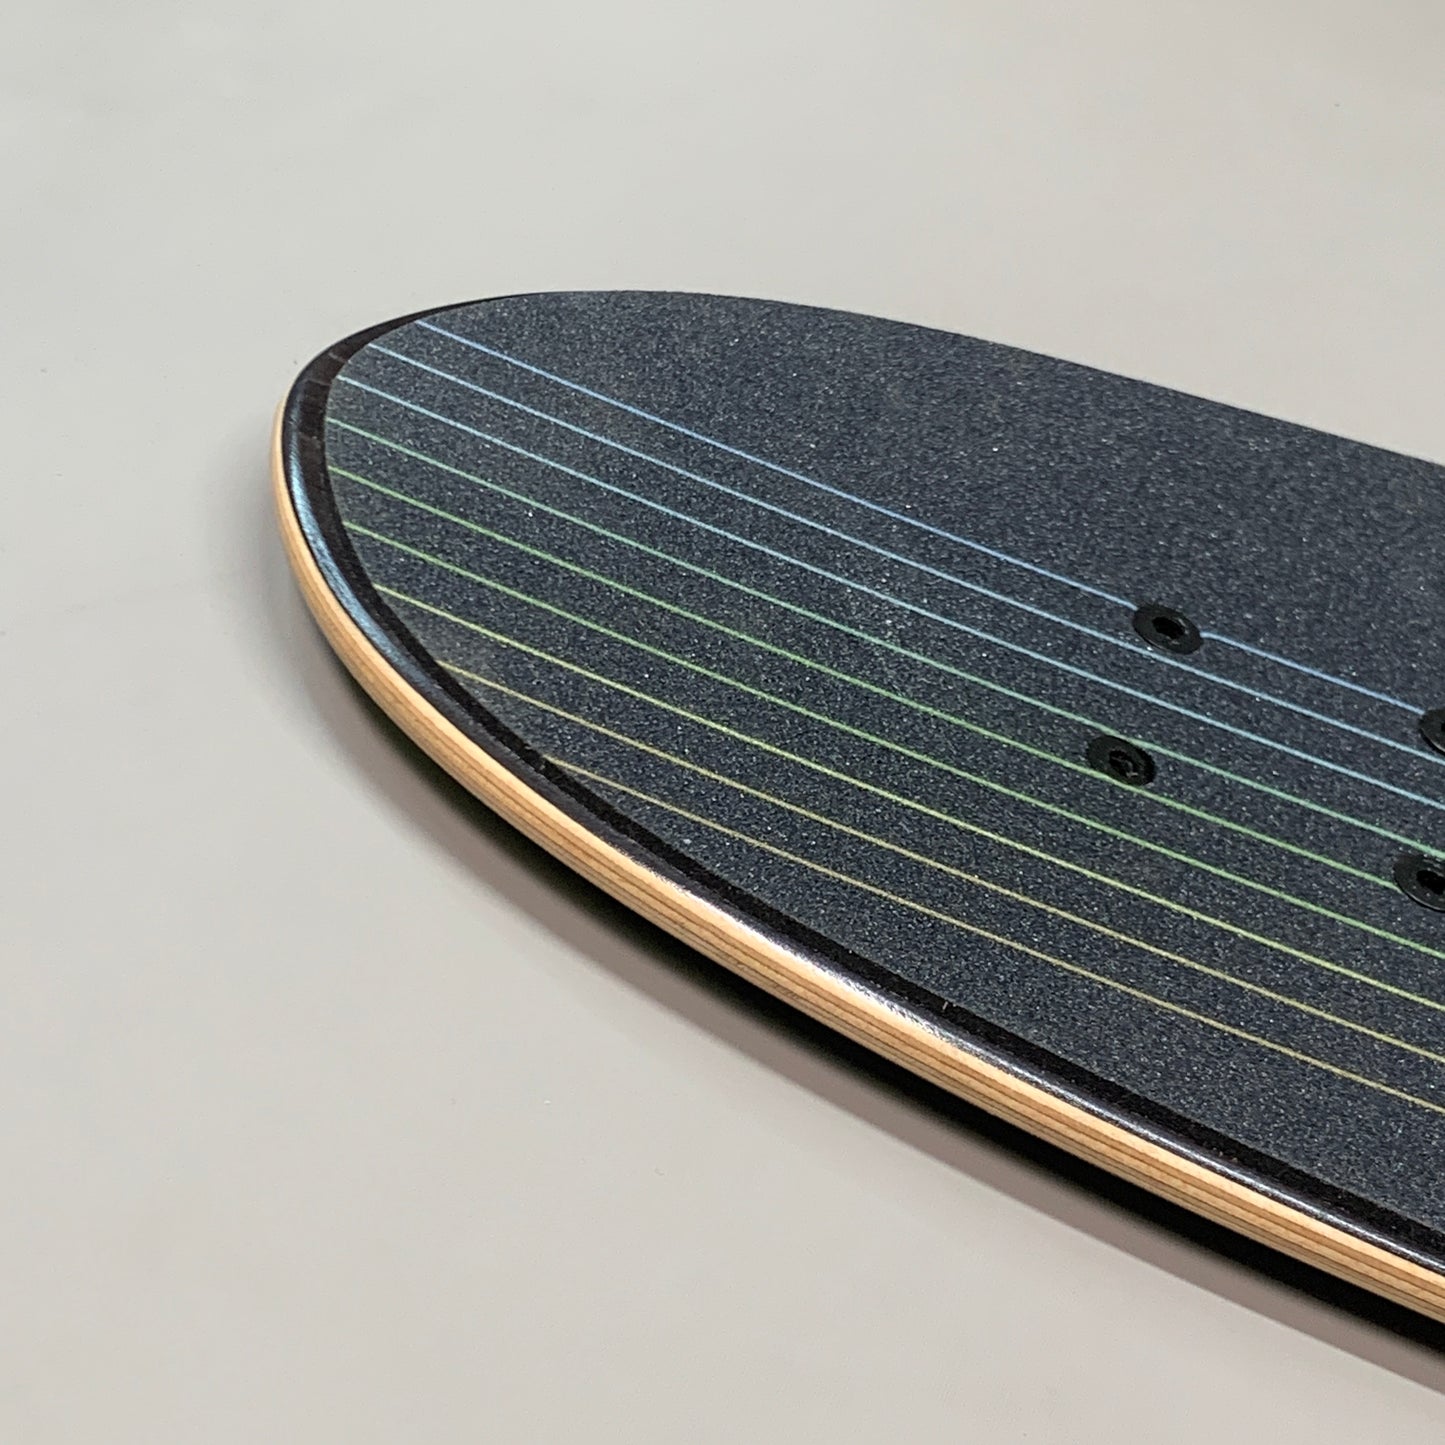 LANDYACHTZ Cruiser Longboard/Skateboard Butter Black Lines Deck 31"x9" (New Other)